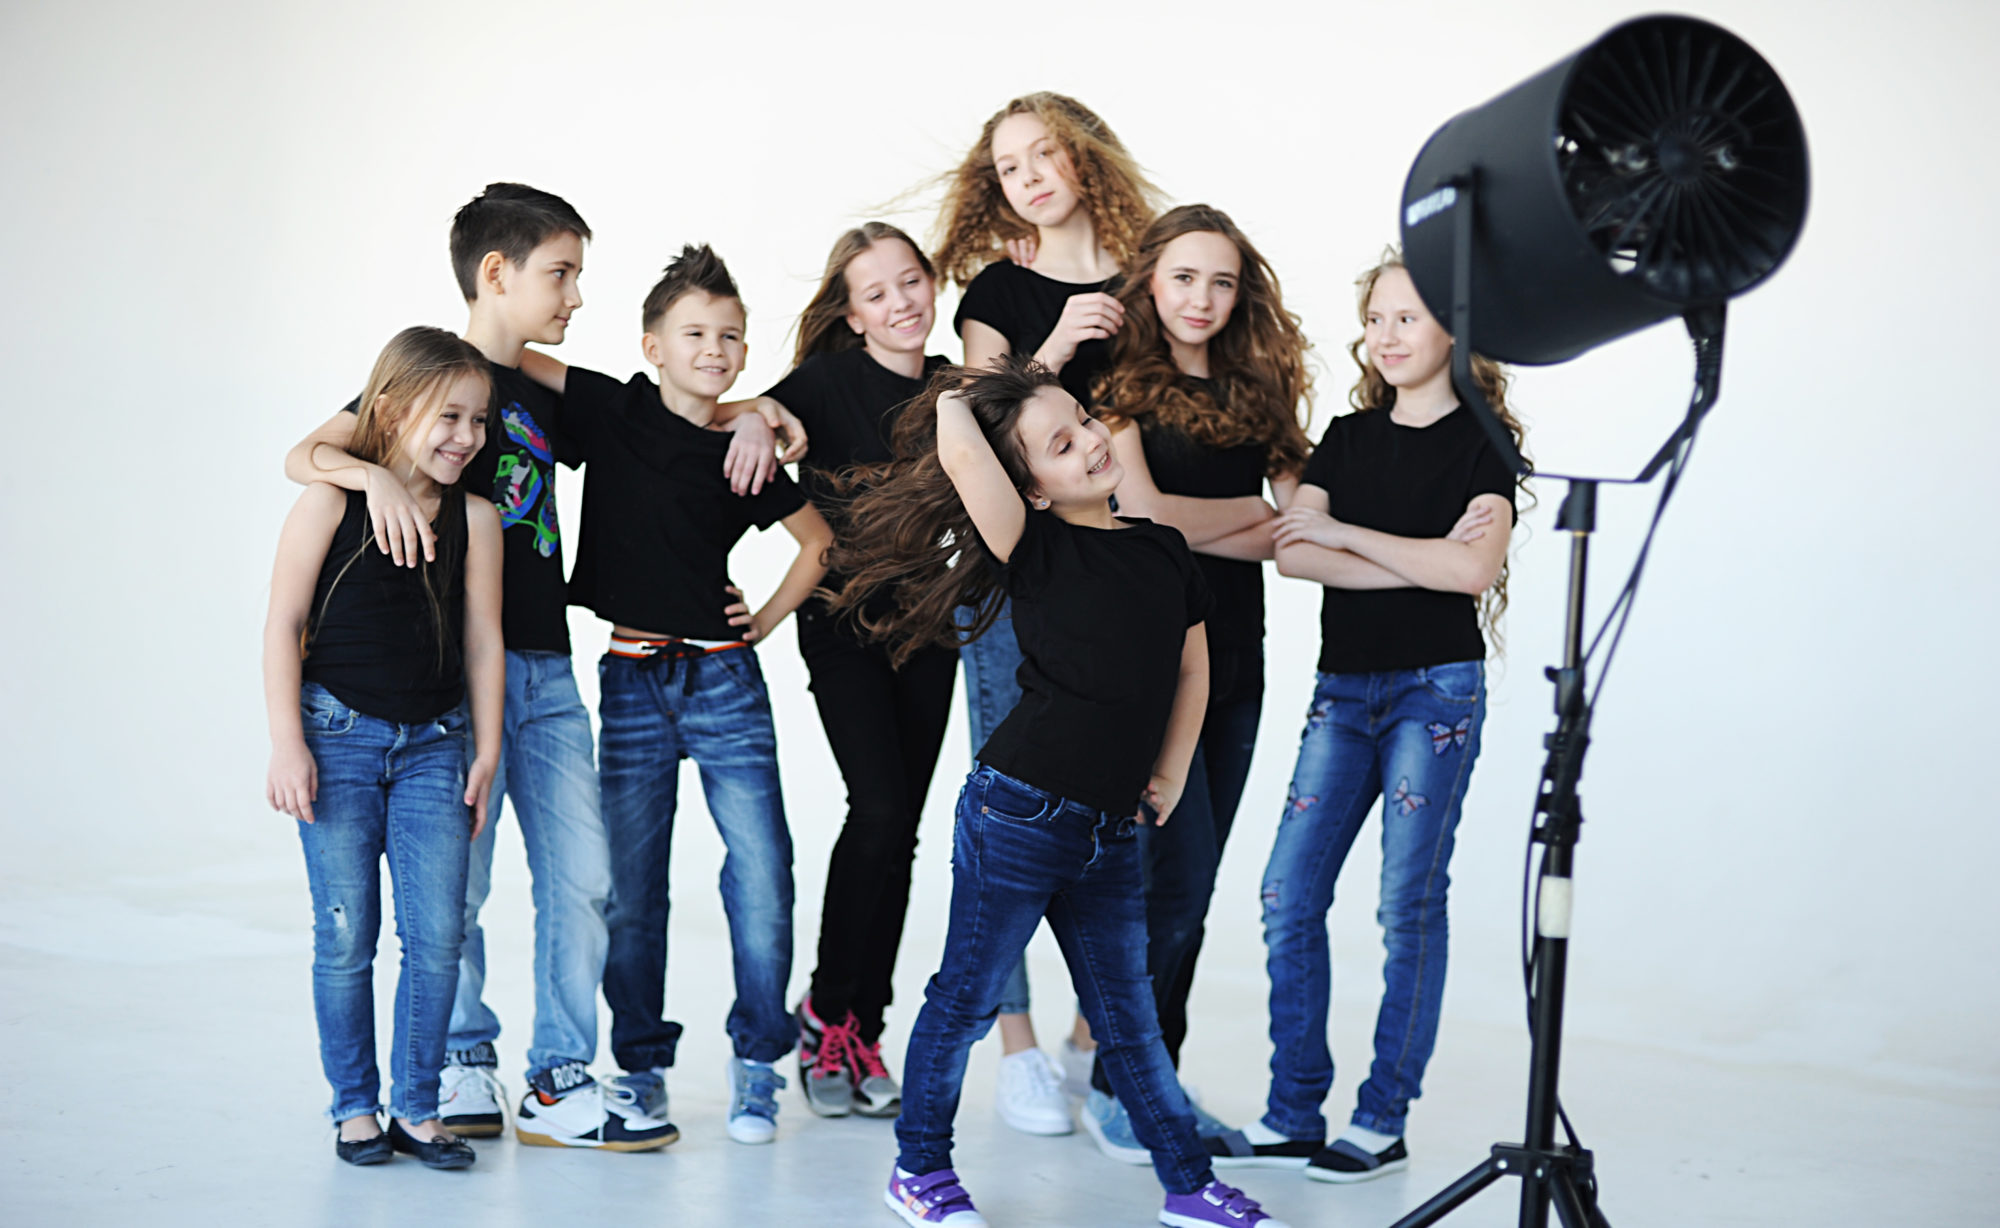 Детское модельное агентство STAR KIDS в Новосибирске